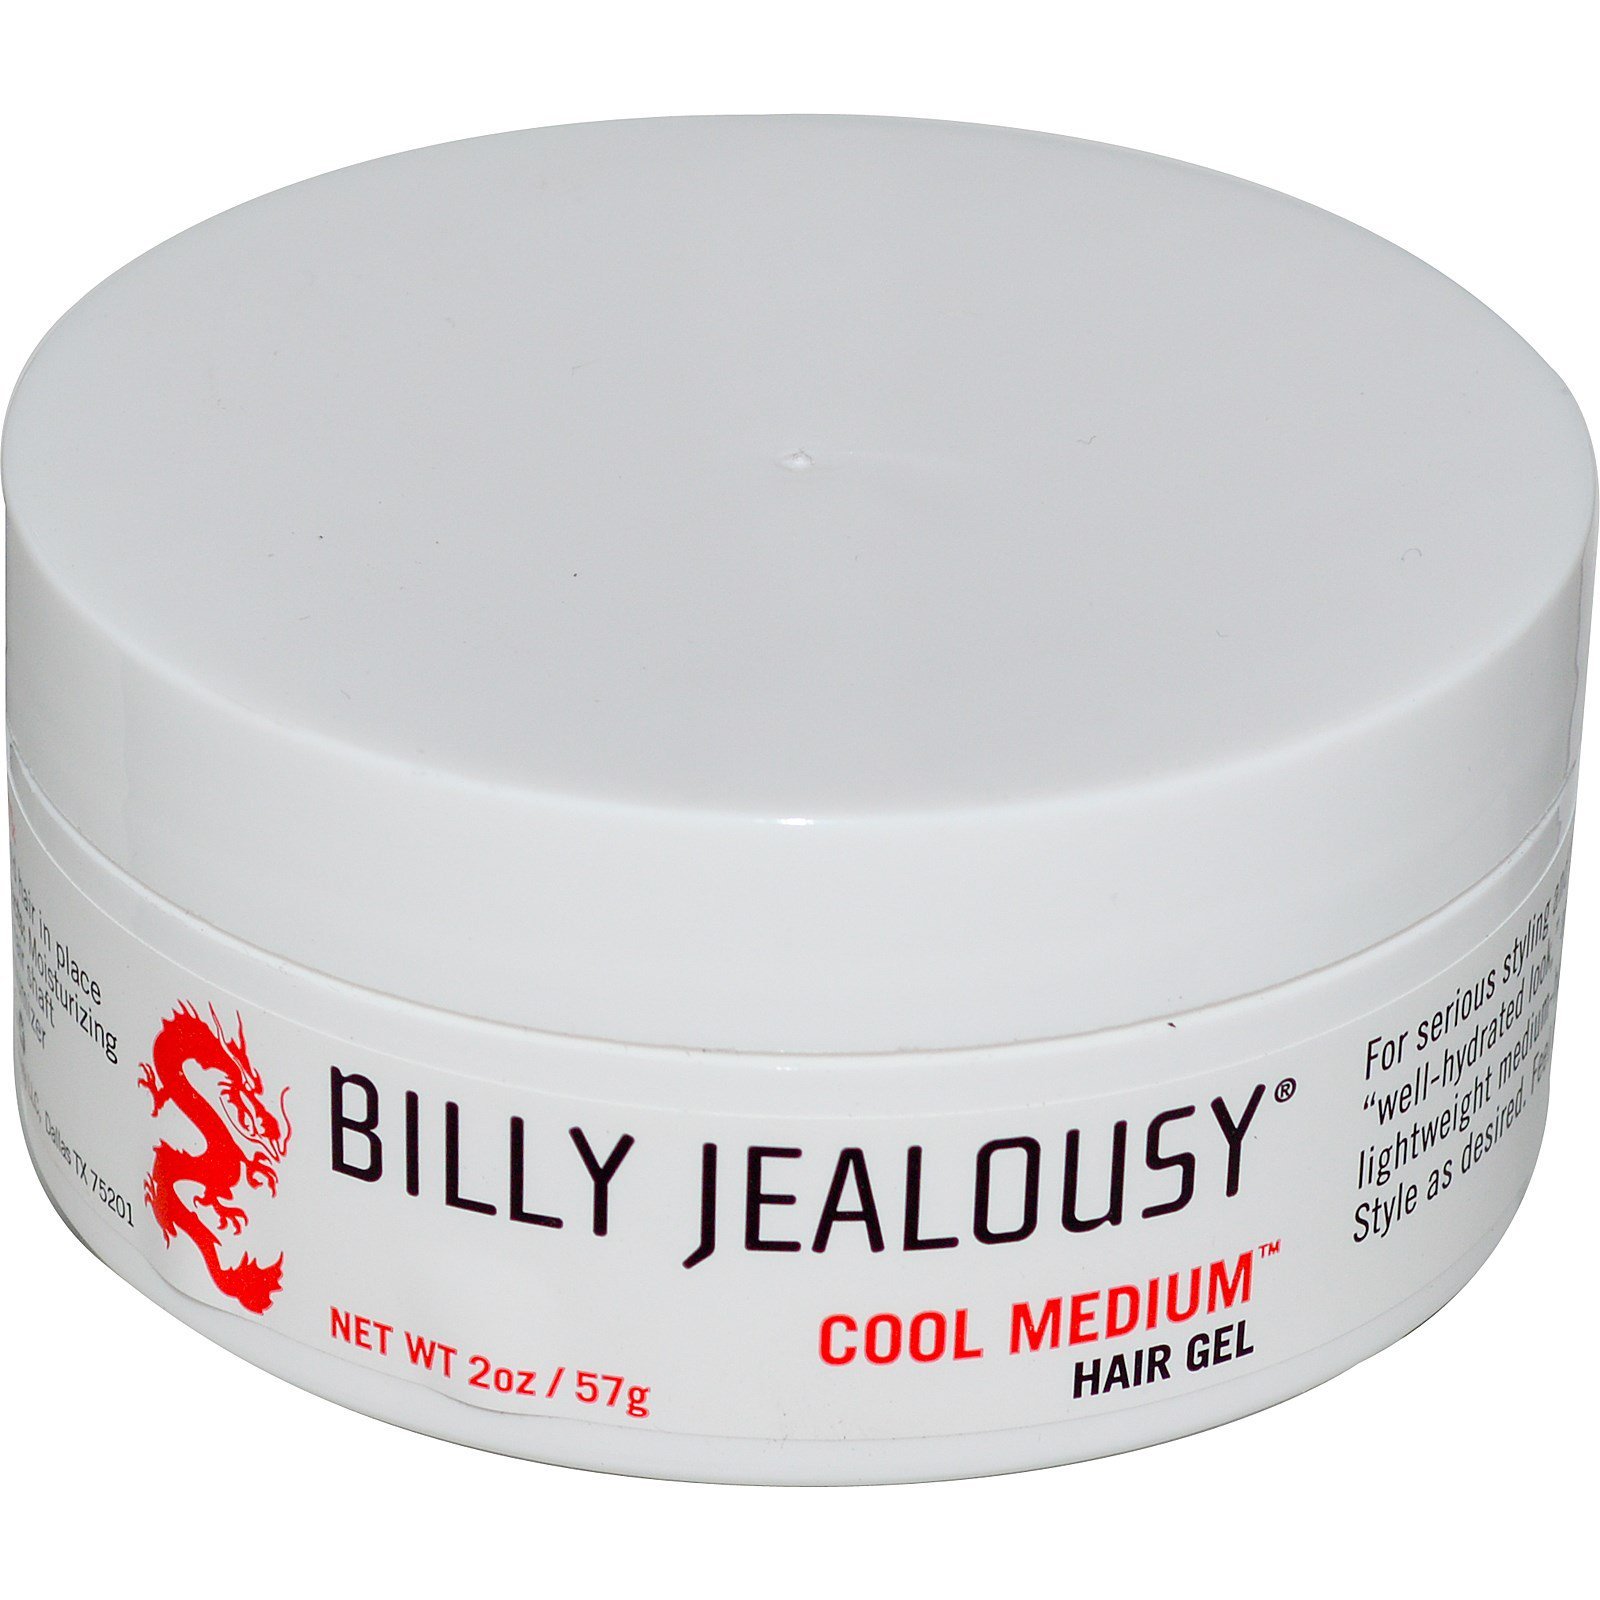 billy jealousy hair gel